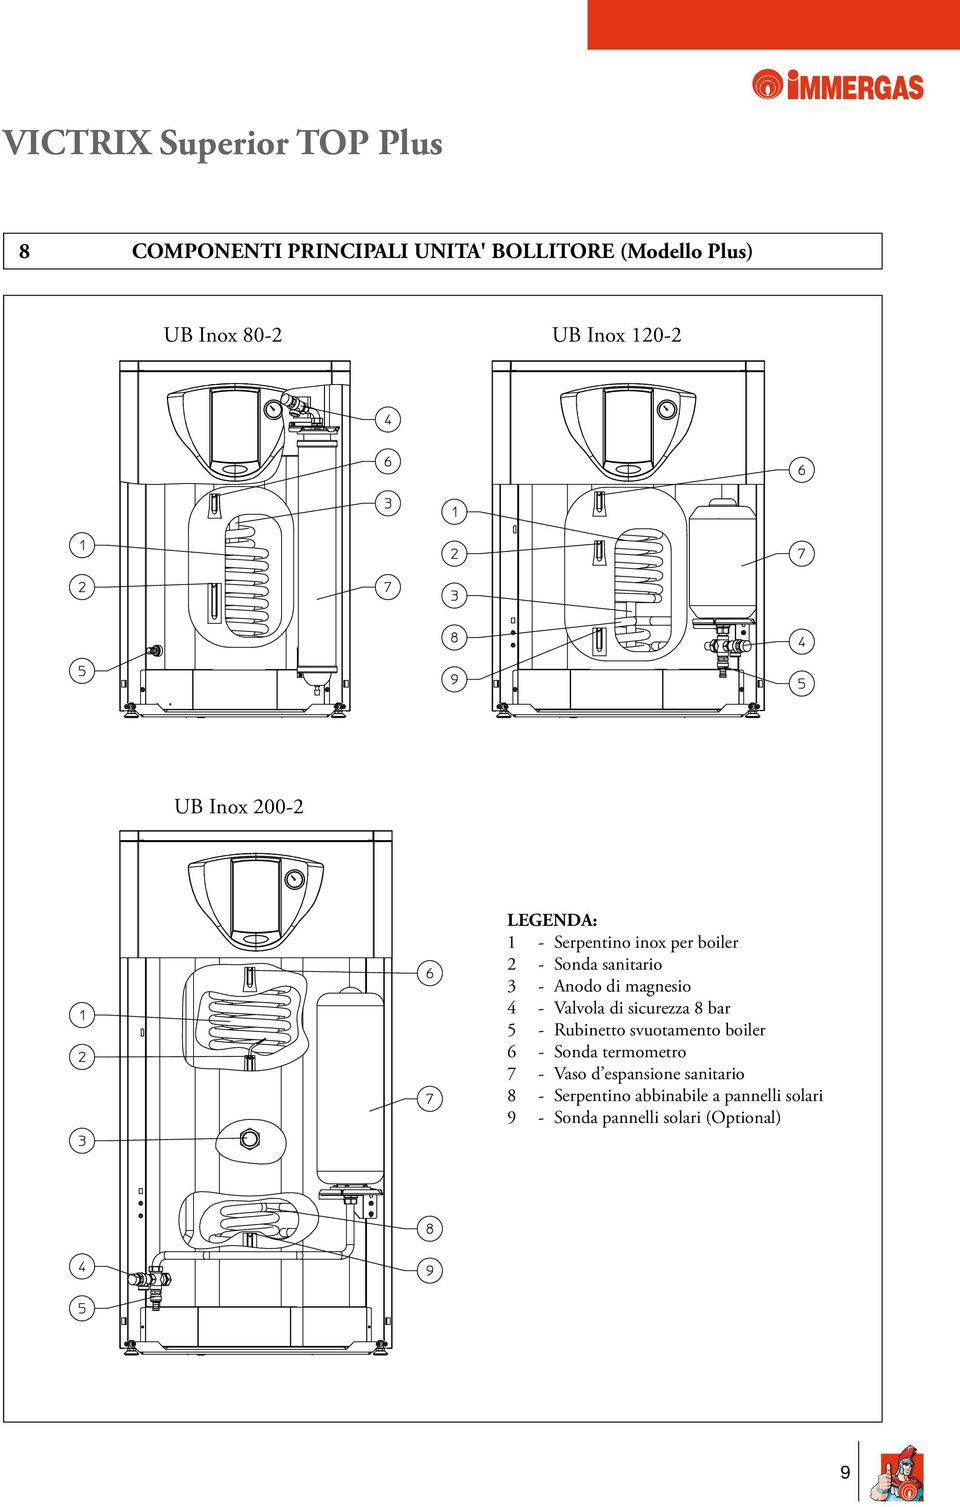 Valvola di sicurezza 8 bar 5 - Rubinetto svuotamento boiler 6 - Sonda termometro 7 - Vaso d